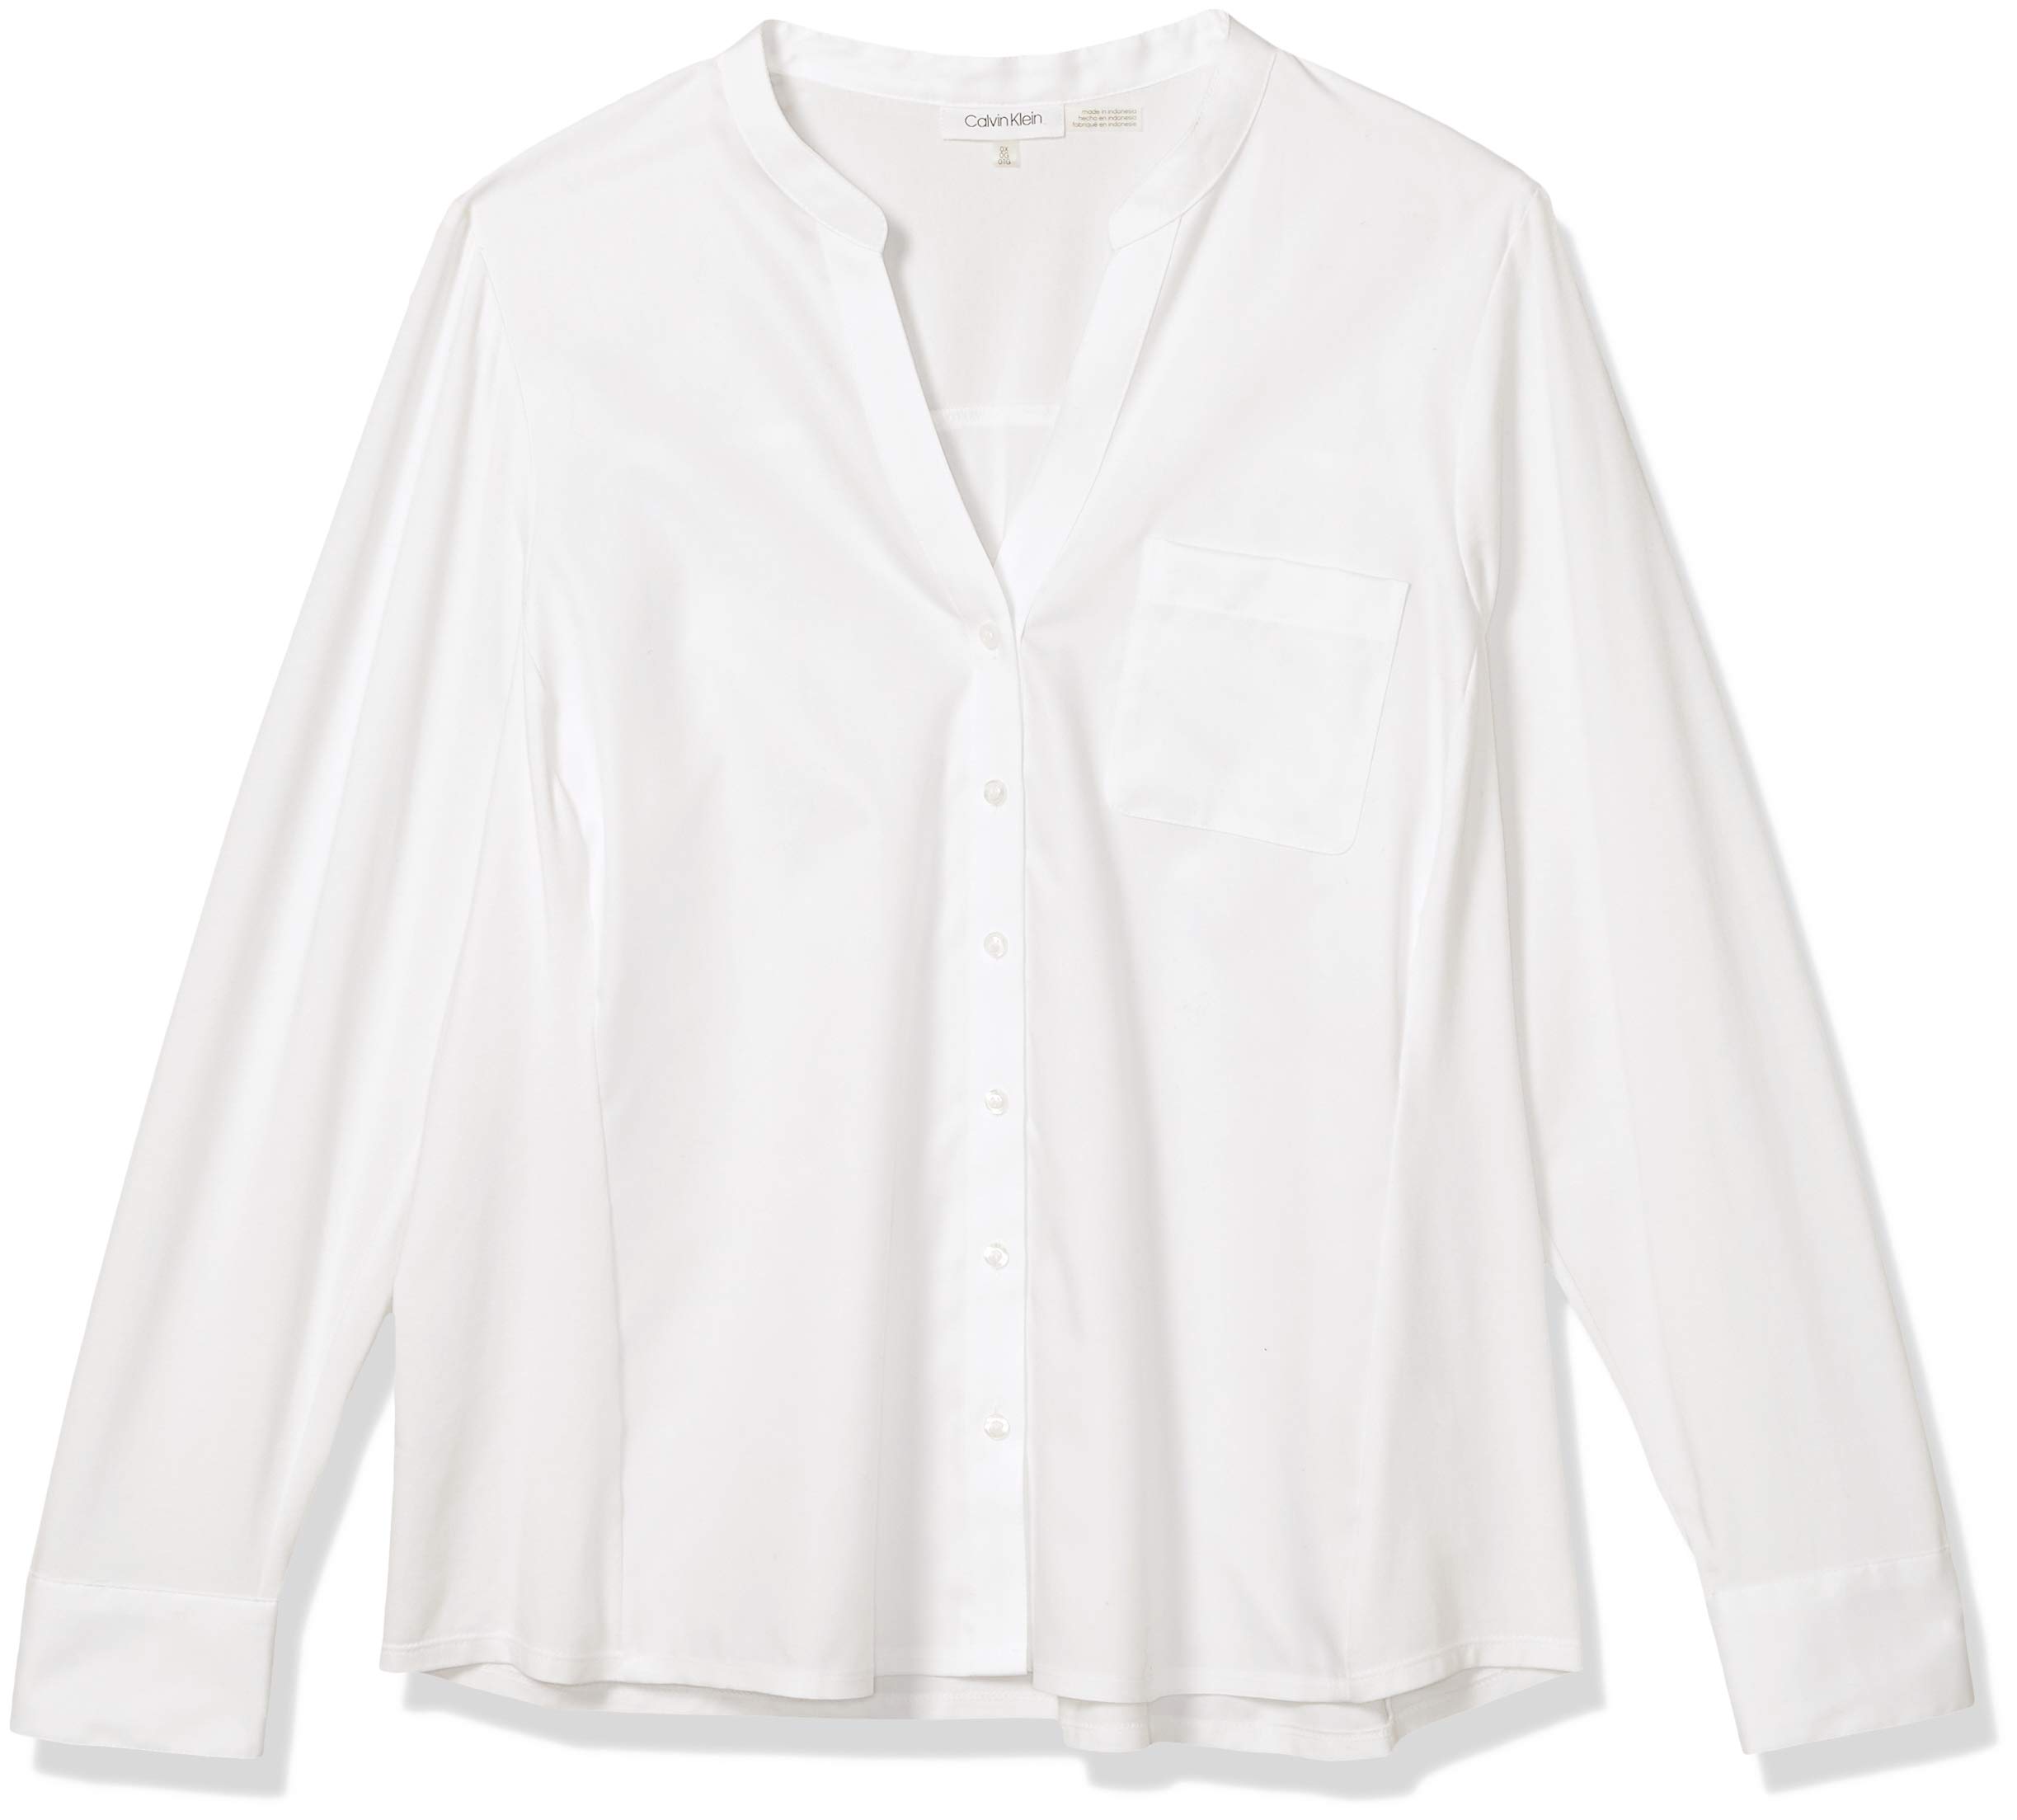 Calvin Klein Women's Plus-Size Non-Iron Knit Combo Shirt